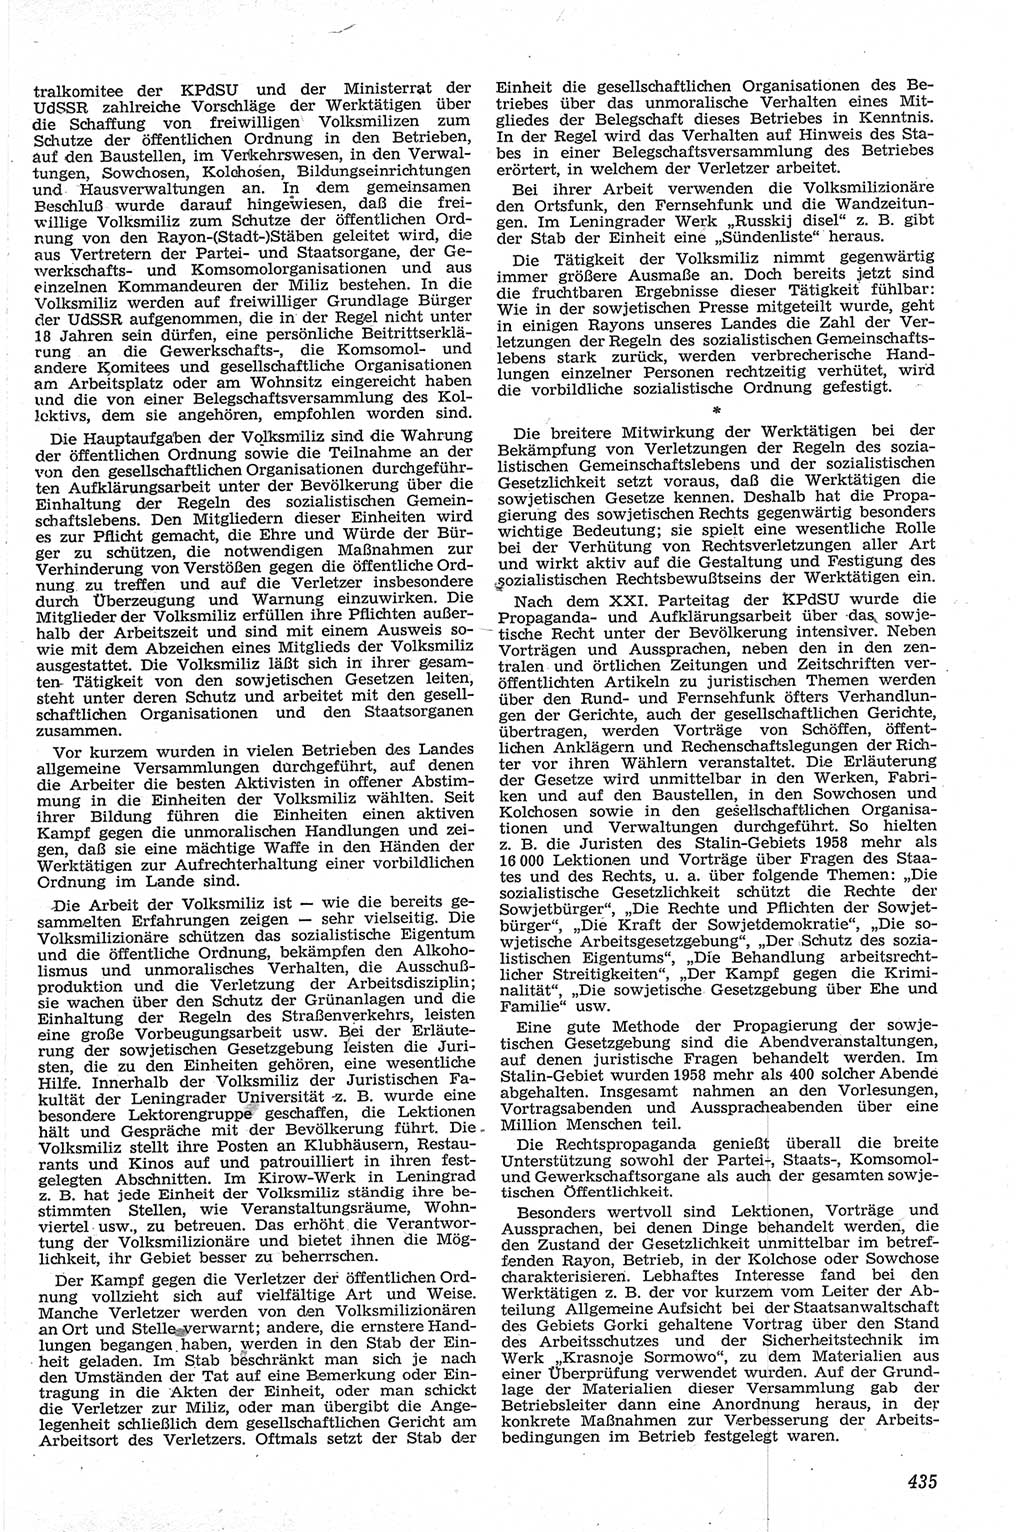 Neue Justiz (NJ), Zeitschrift für Recht und Rechtswissenschaft [Deutsche Demokratische Republik (DDR)], 13. Jahrgang 1959, Seite 435 (NJ DDR 1959, S. 435)